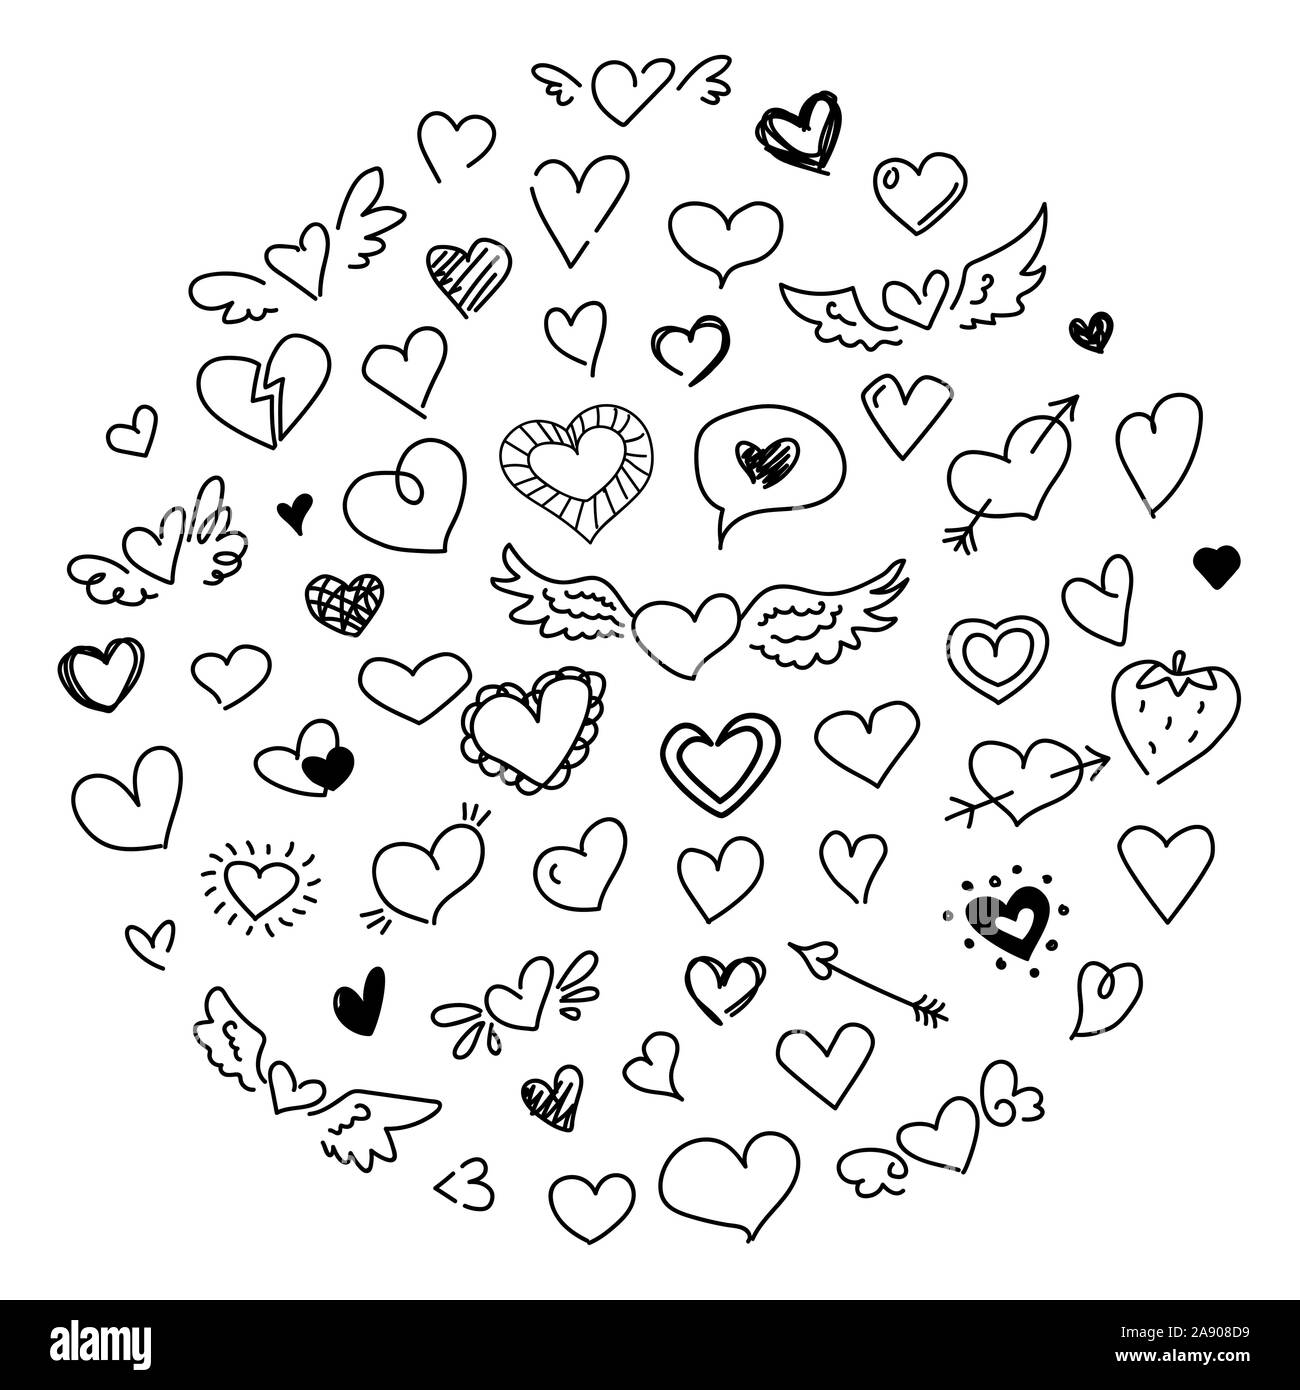 Doodle mignon coeur. Amour dessin de concept design. Valentines Day croquis noir collection symboles romantique isolé sur fond blanc Illustration de Vecteur